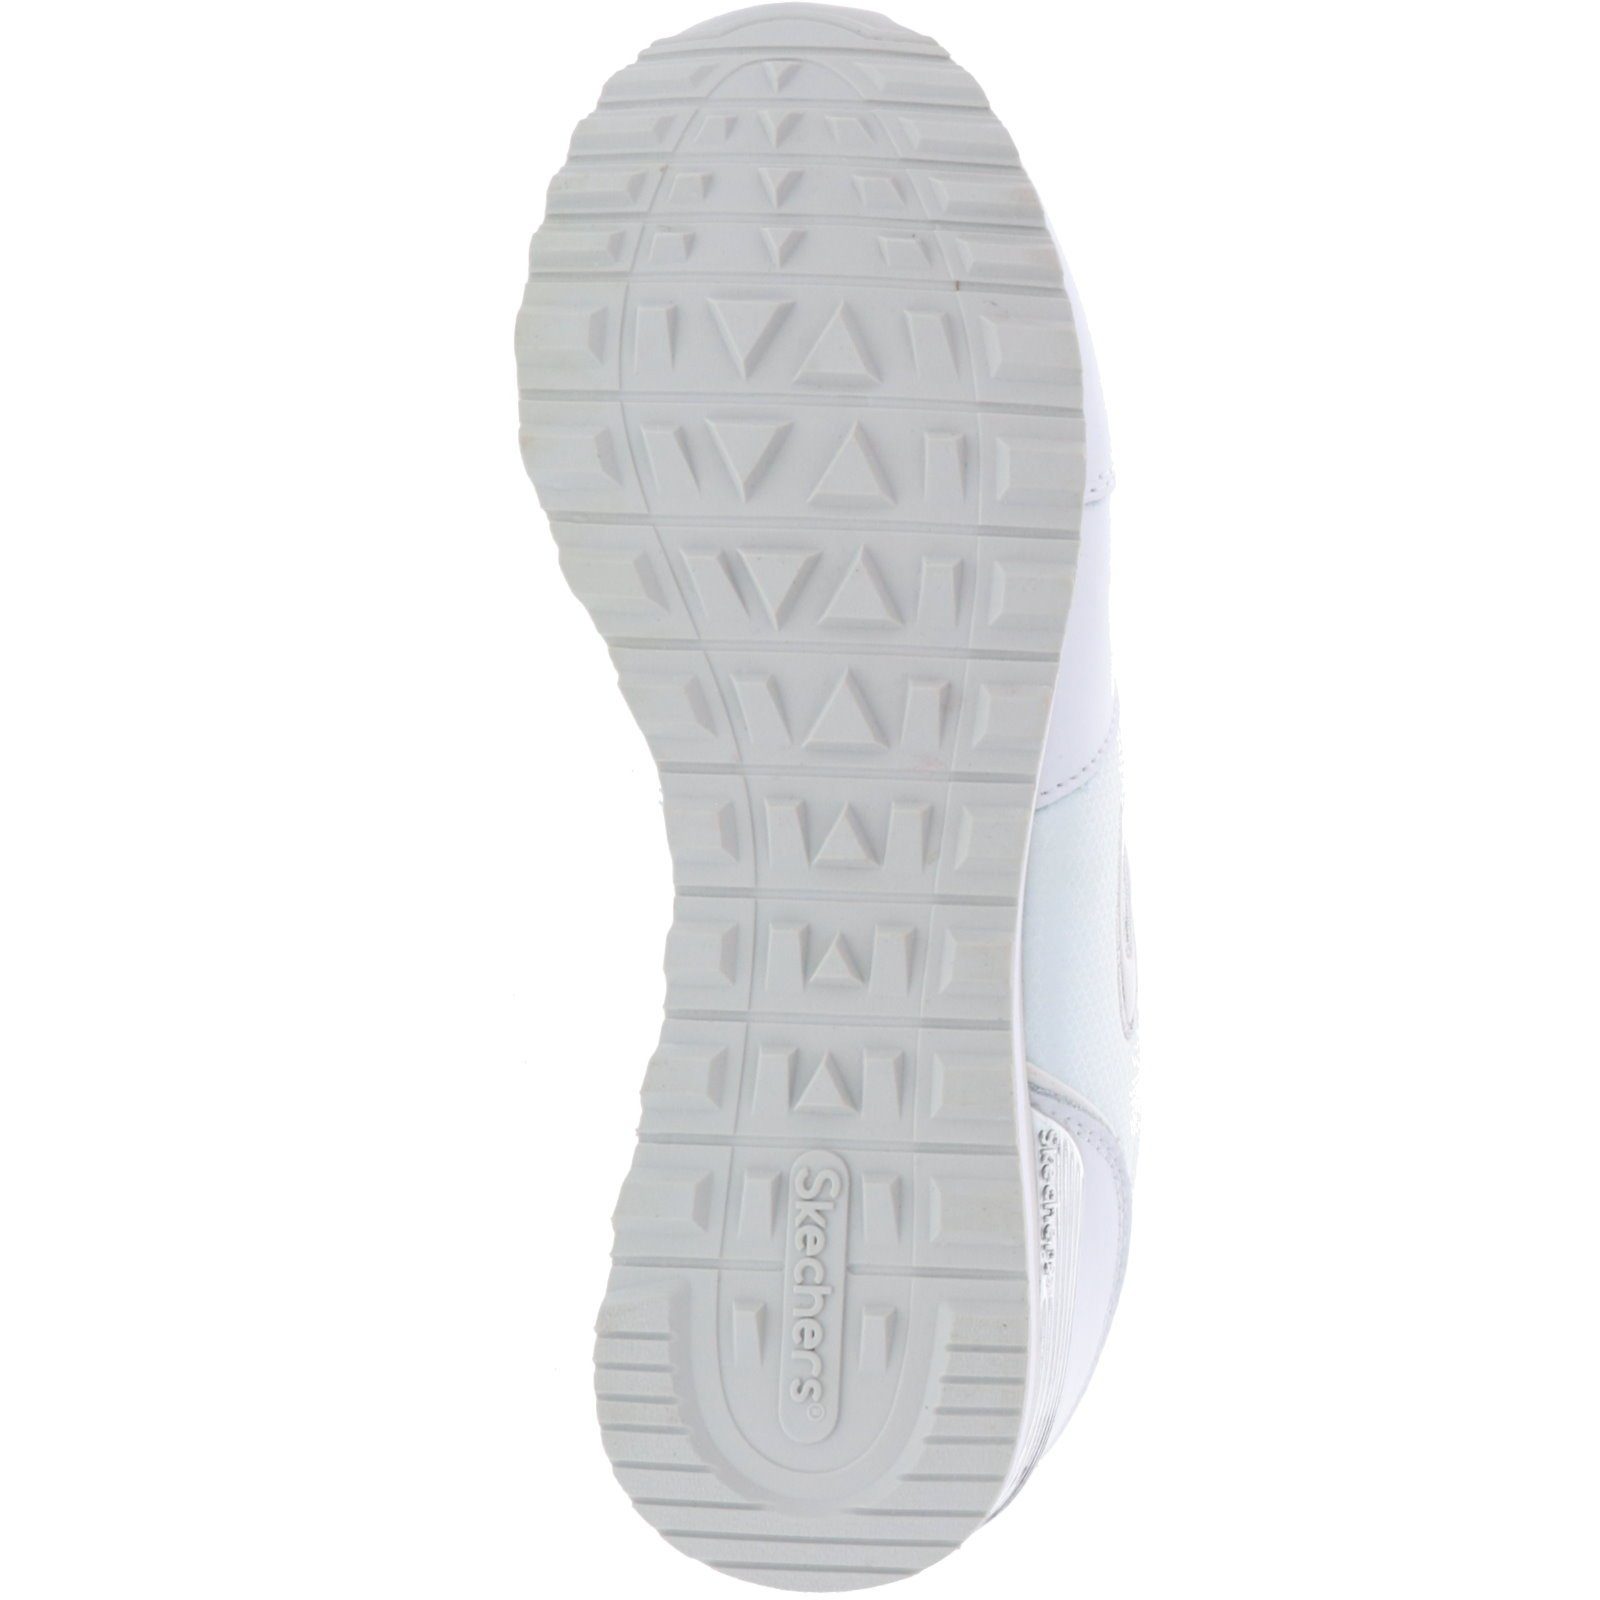 Gurl 85-Goldn 111/WSL OG Sneaker Skechers White/Silver